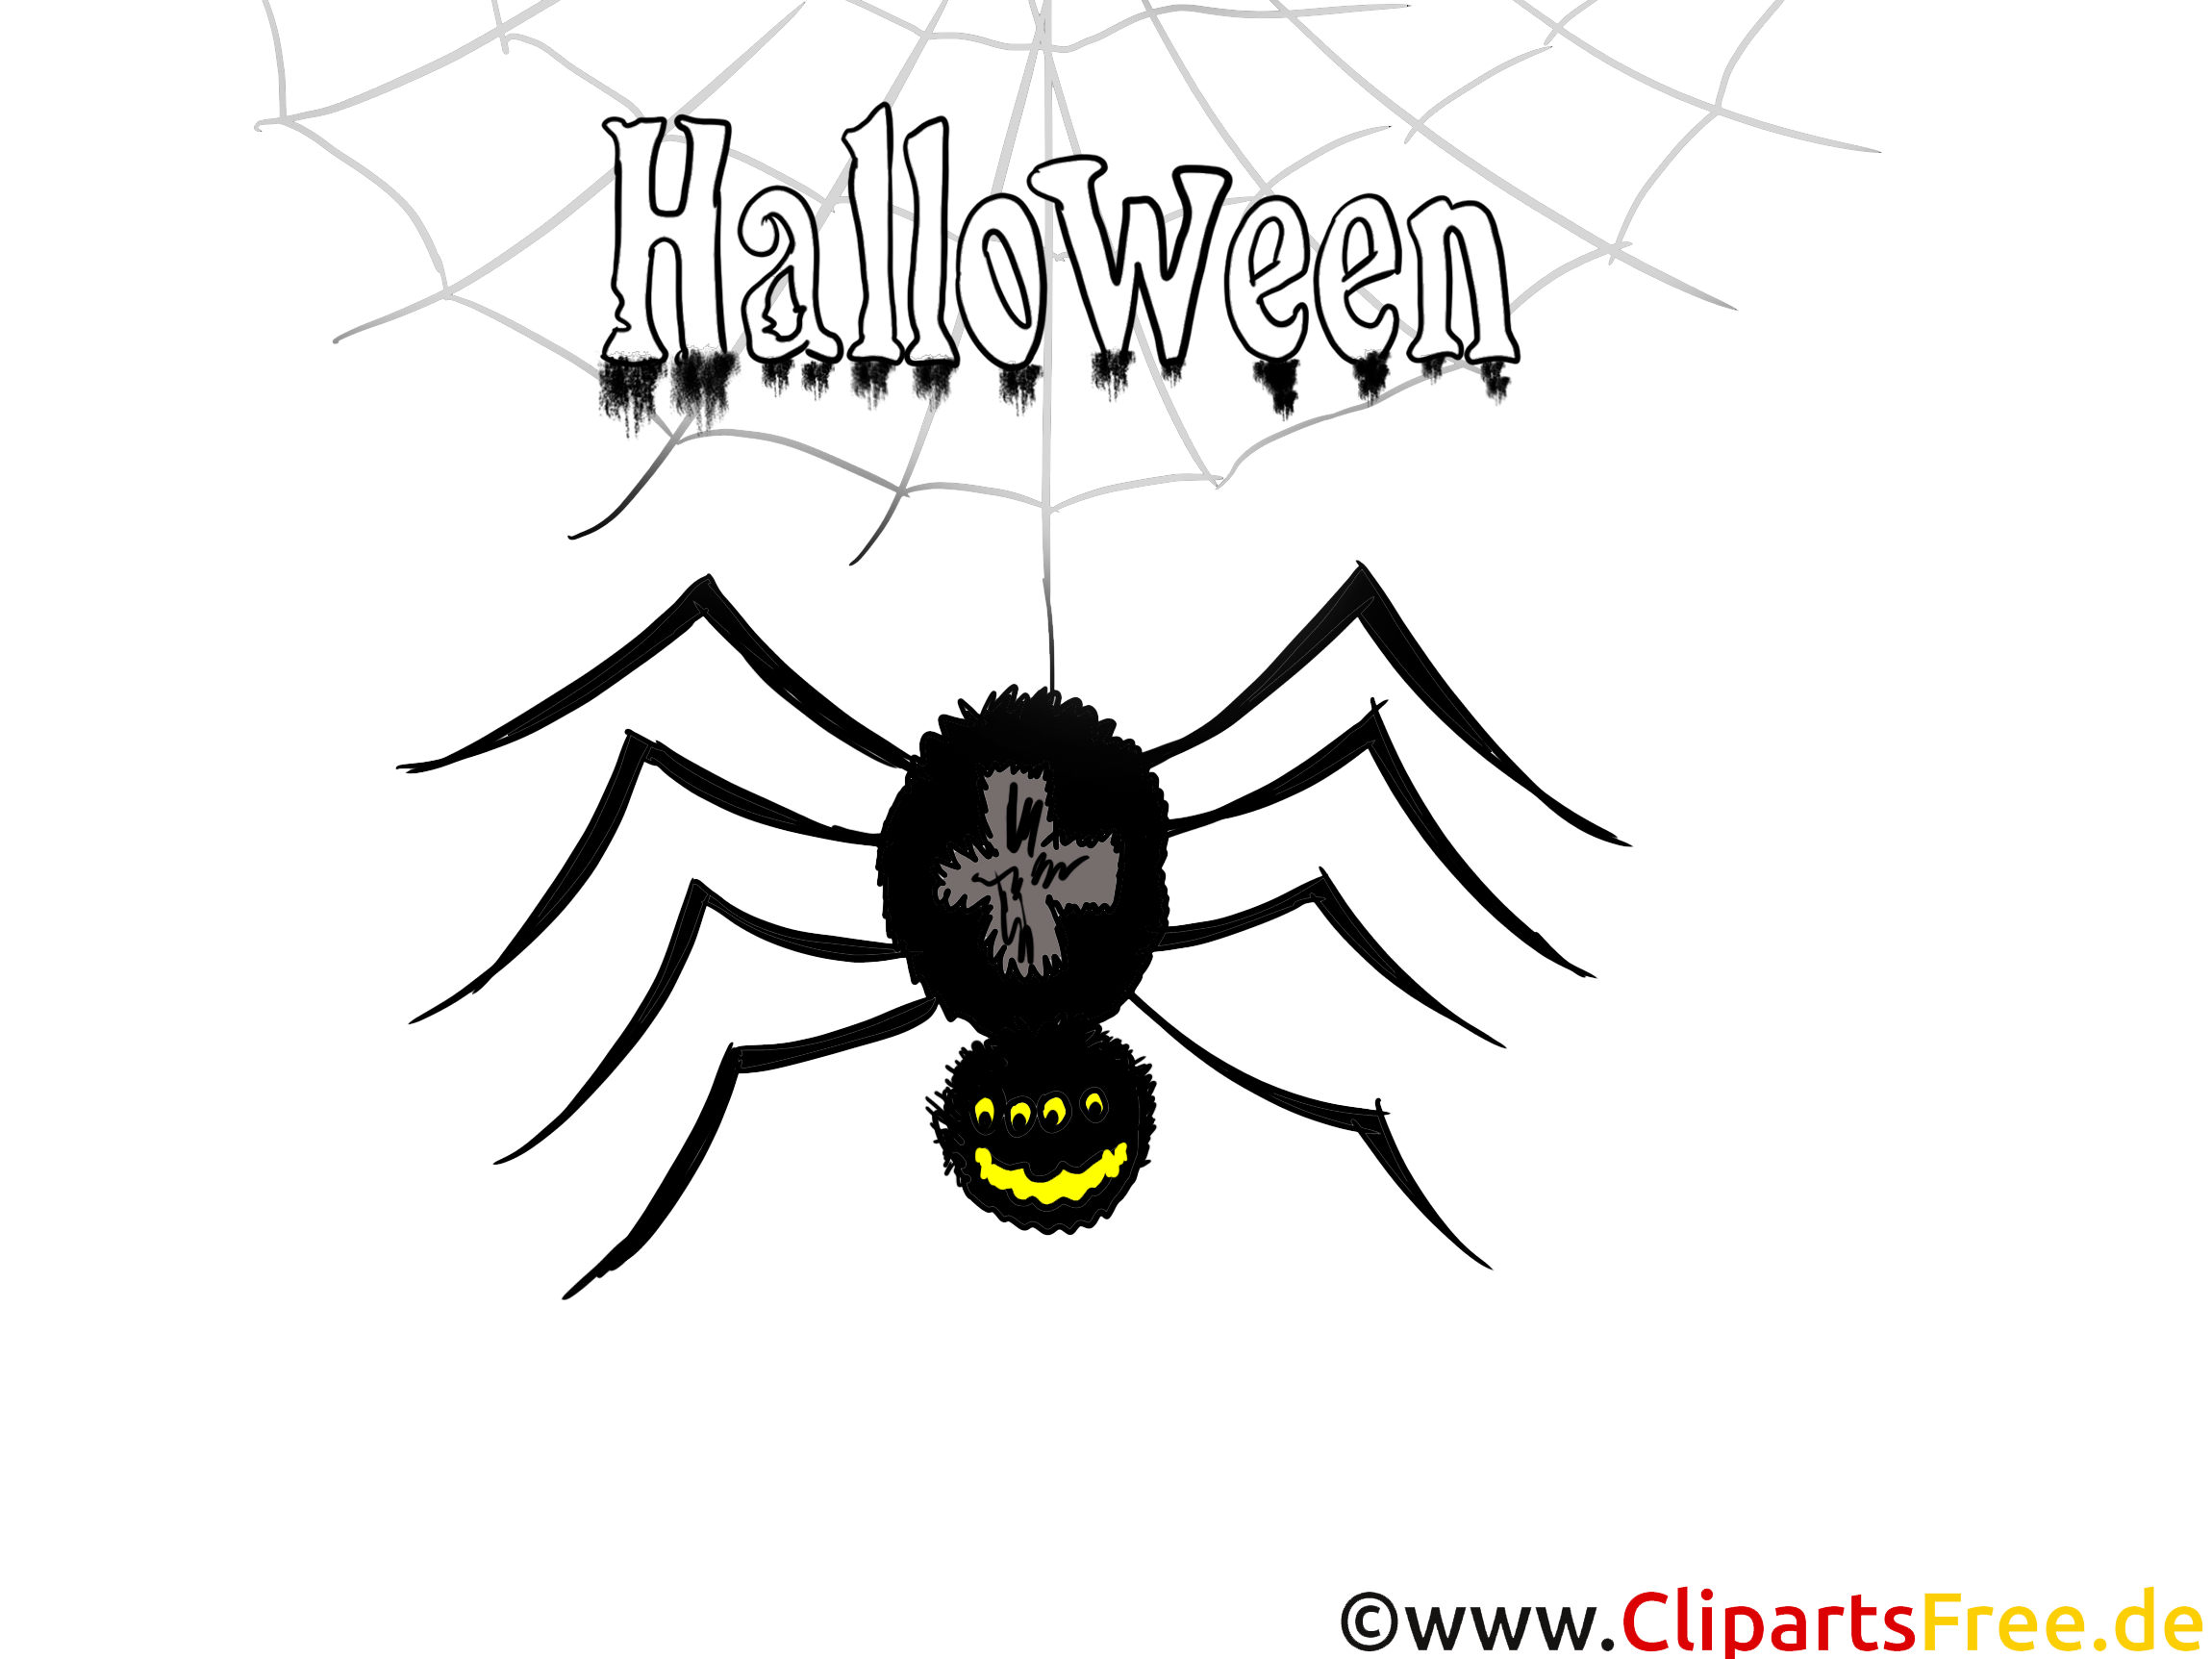 Araignée halloween image à télécharger gratuite - Halloween dessin